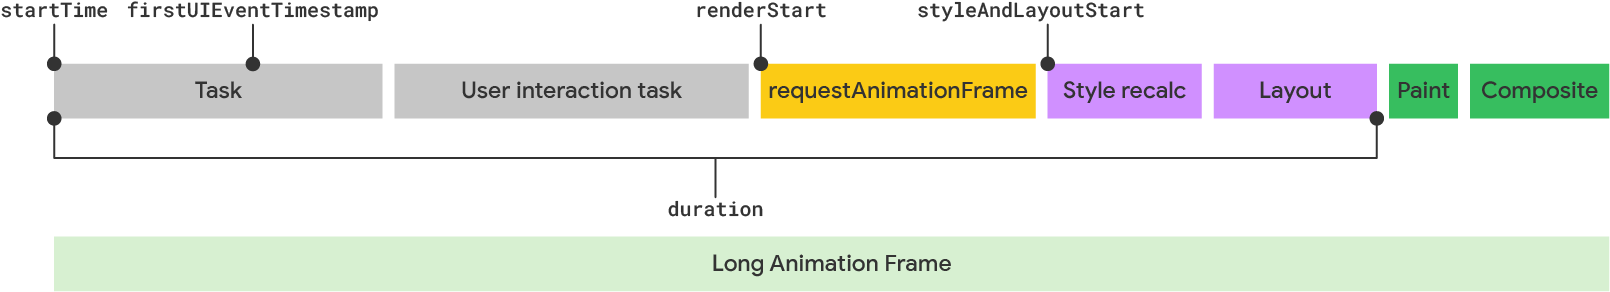 Visualização de um longo frame de animação de acordo com o modelo LoAF.